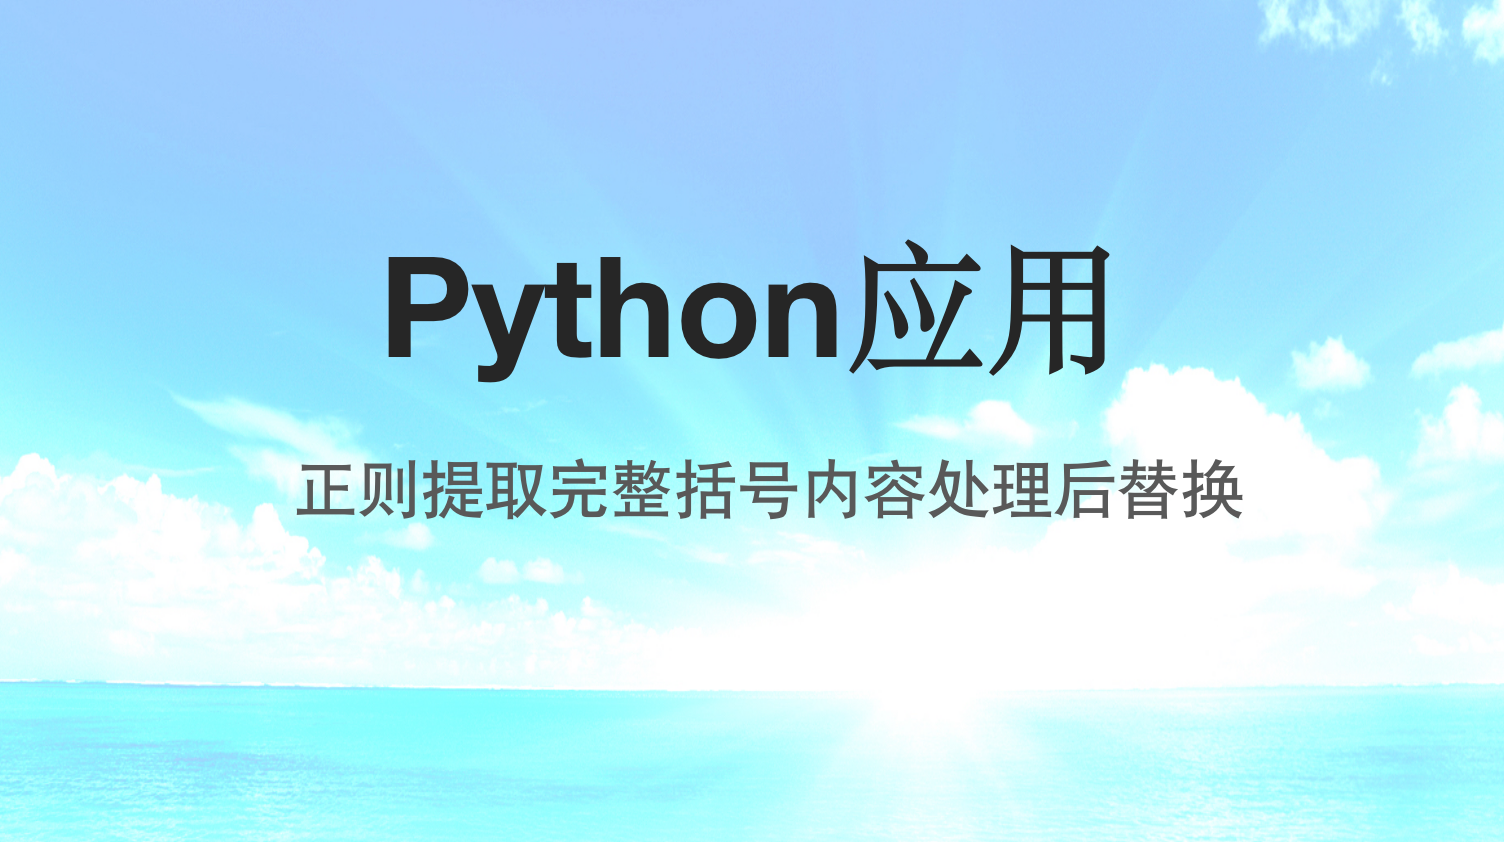 Python处理字符串-正则提取遇到的第一个完整括号内容处理后替换